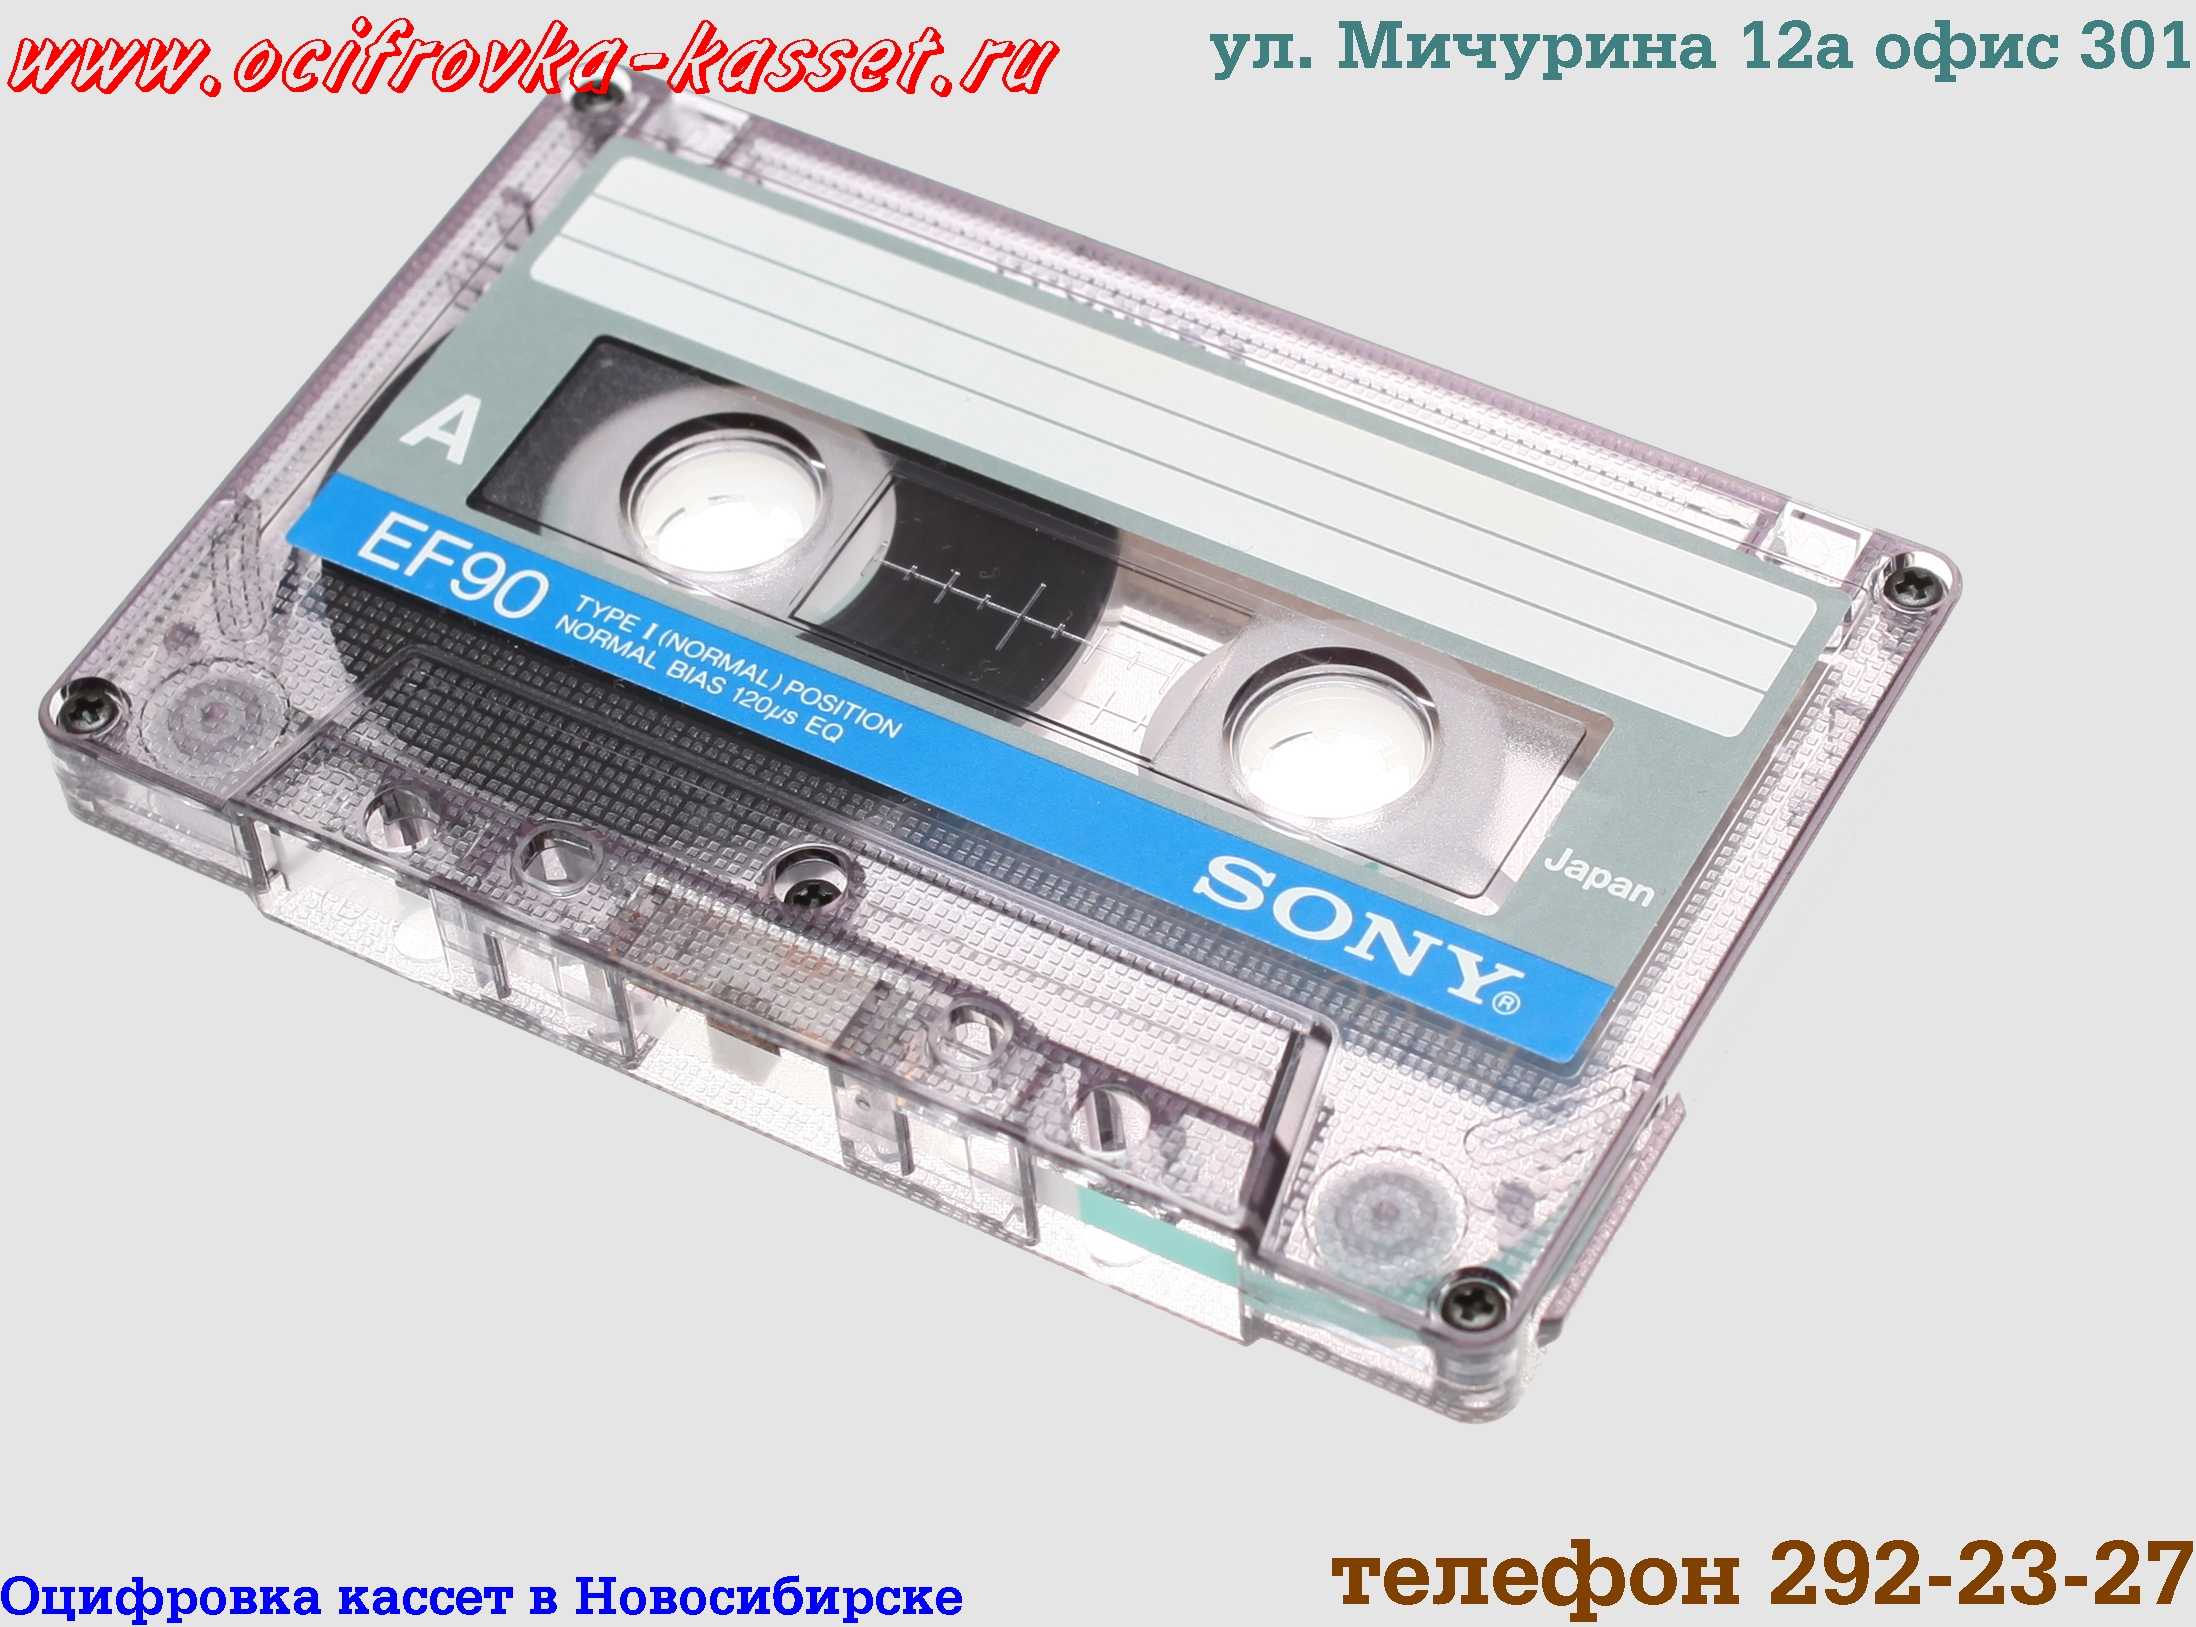 Каталог аудиокассет. Кассета Sony EF 90. Аудиокассеты ECP EF-90. Оцифровка аудиокассет. Кассеты магнитофон оцифровка.